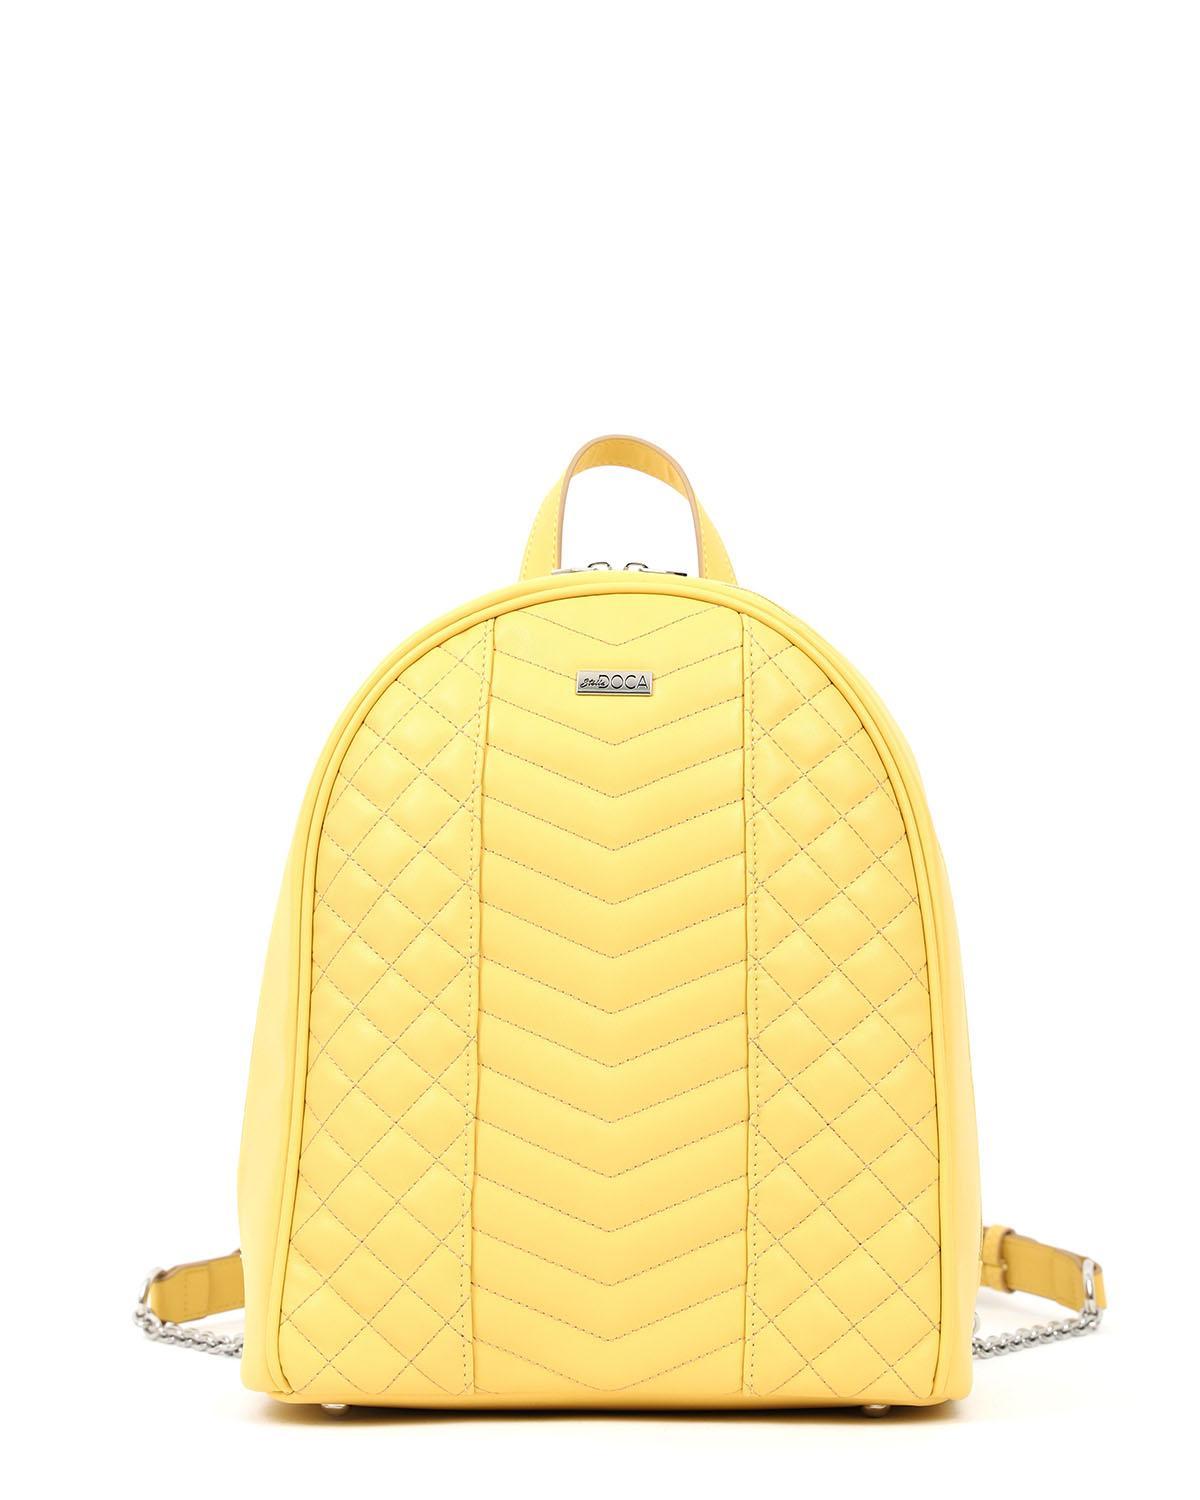 |17272| Τσάντα πλάτης κίτρινη